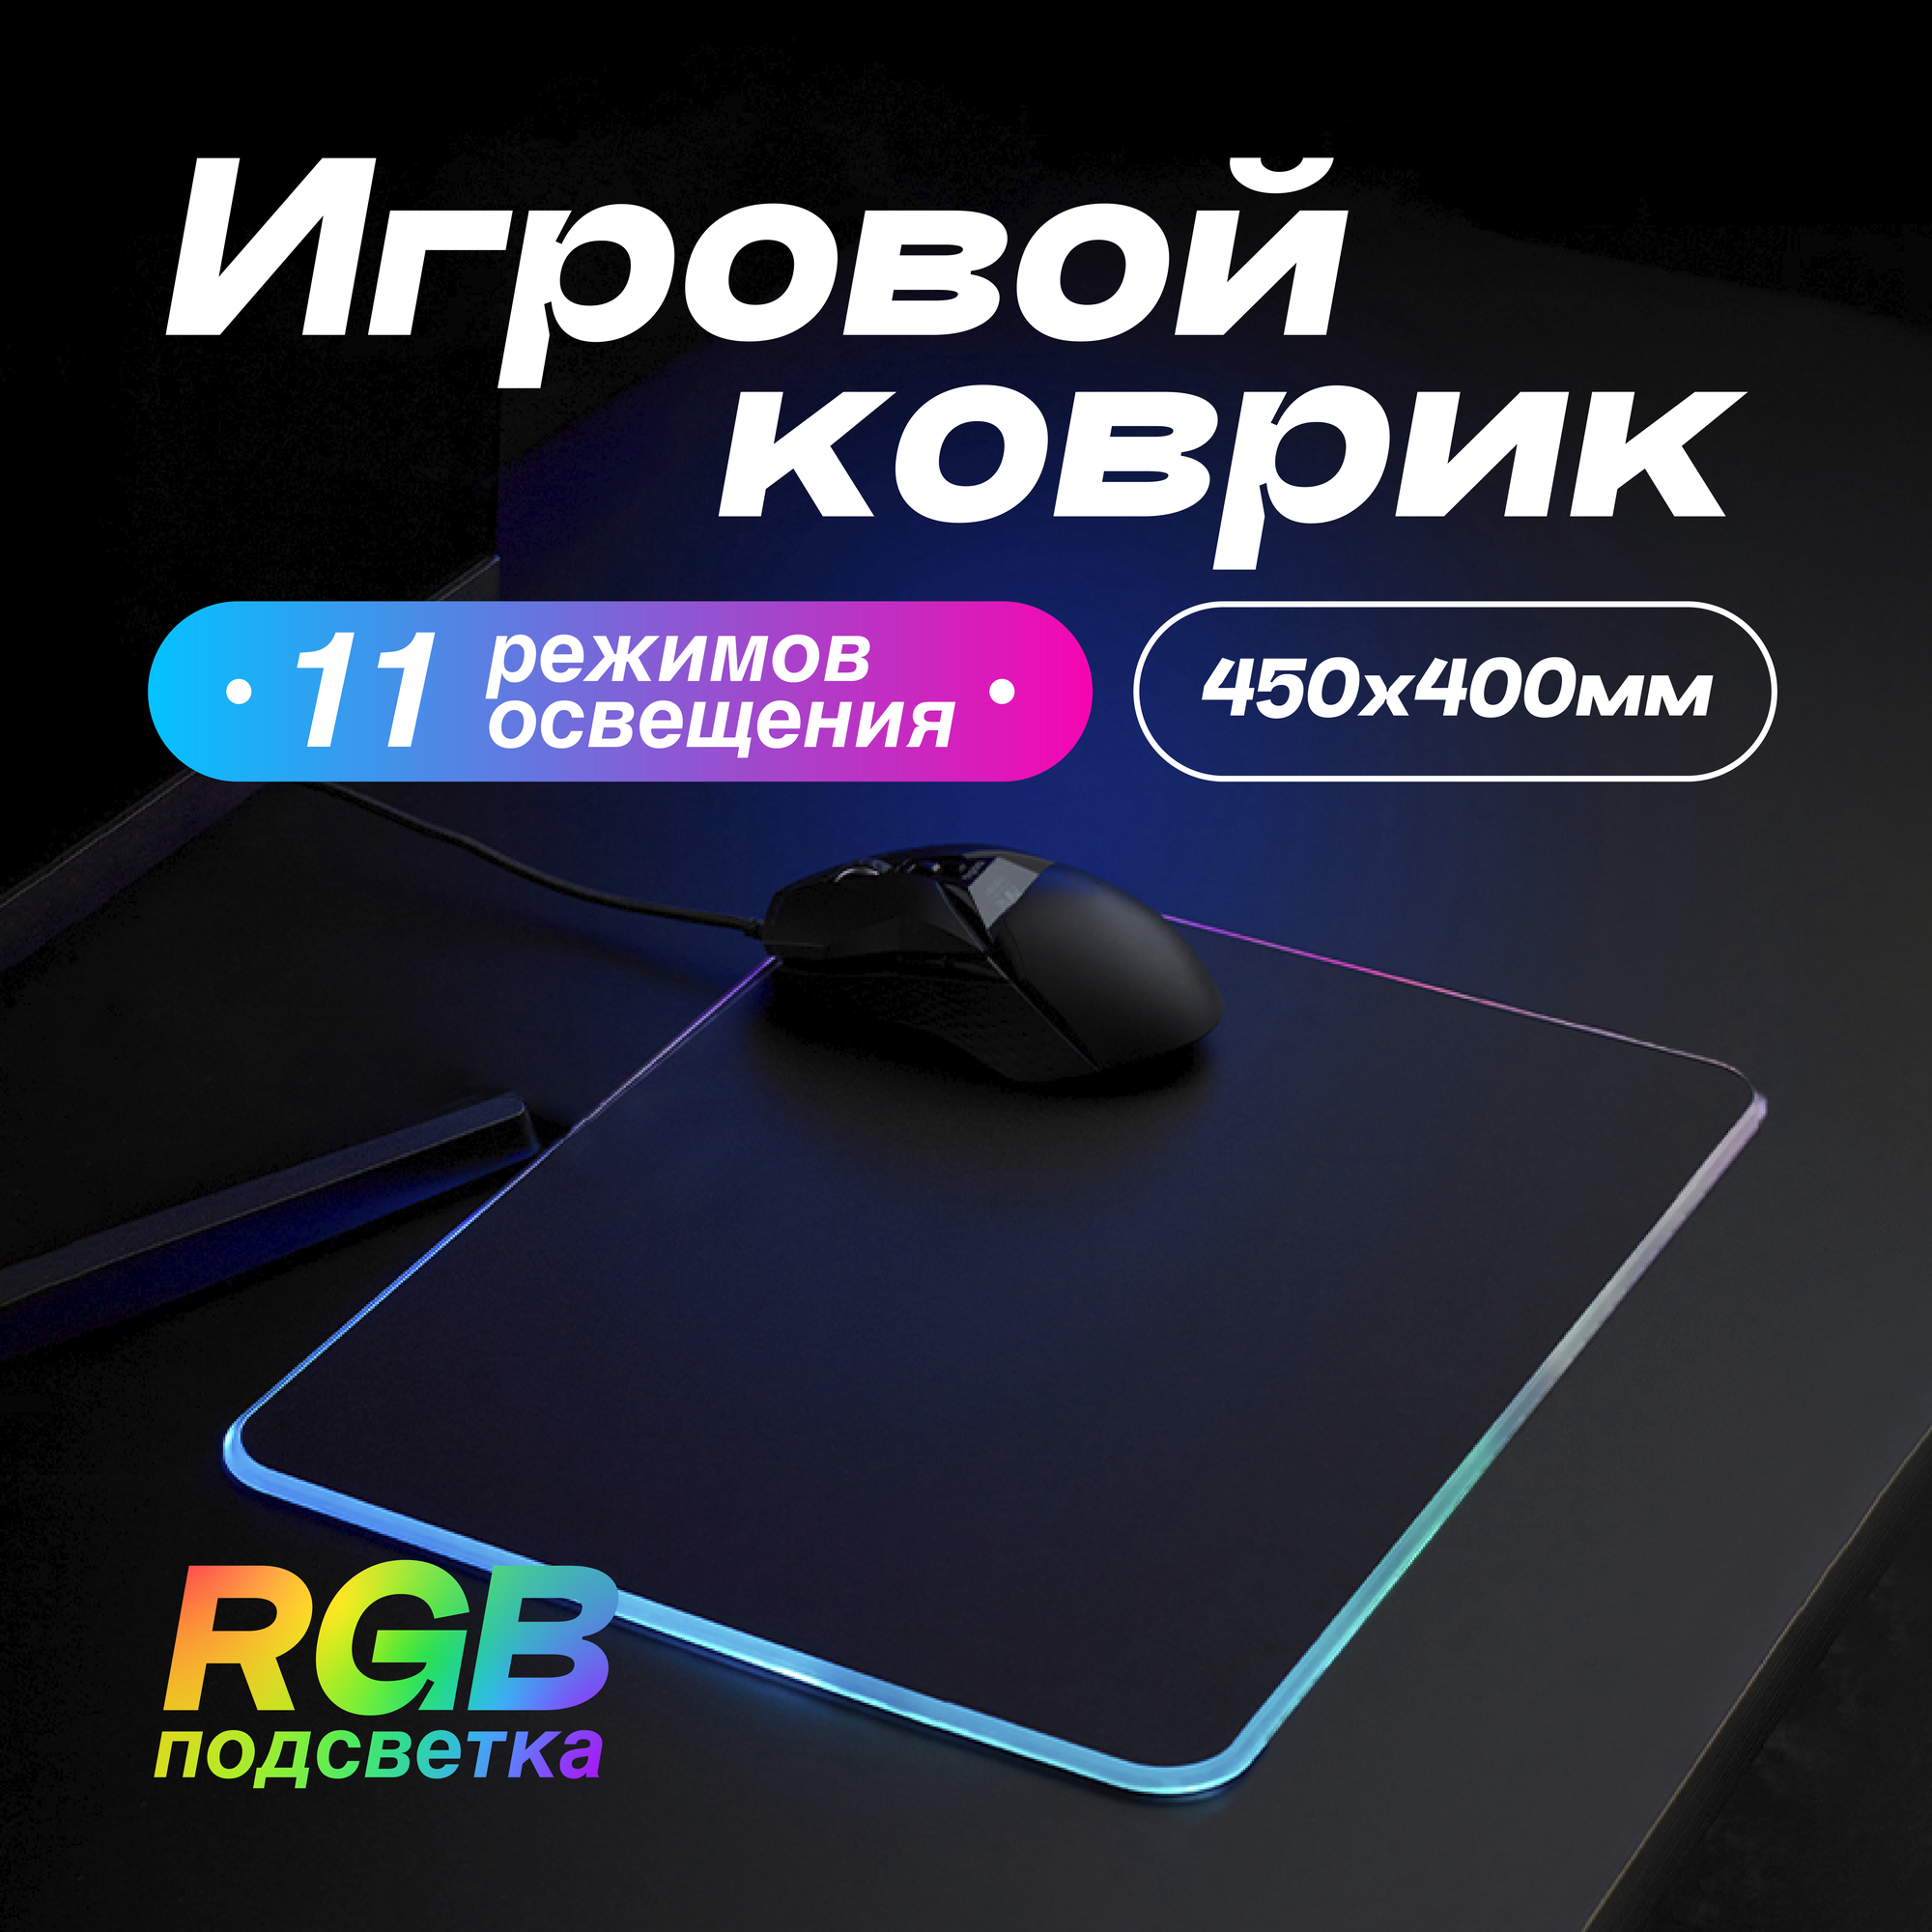 Игровой коврик для мыши большой с подсветкой RGB 400х450 мм черный / Коврик для мыши игровой XXL/ Коврик для мыши / Коврик для мышки игровой большой